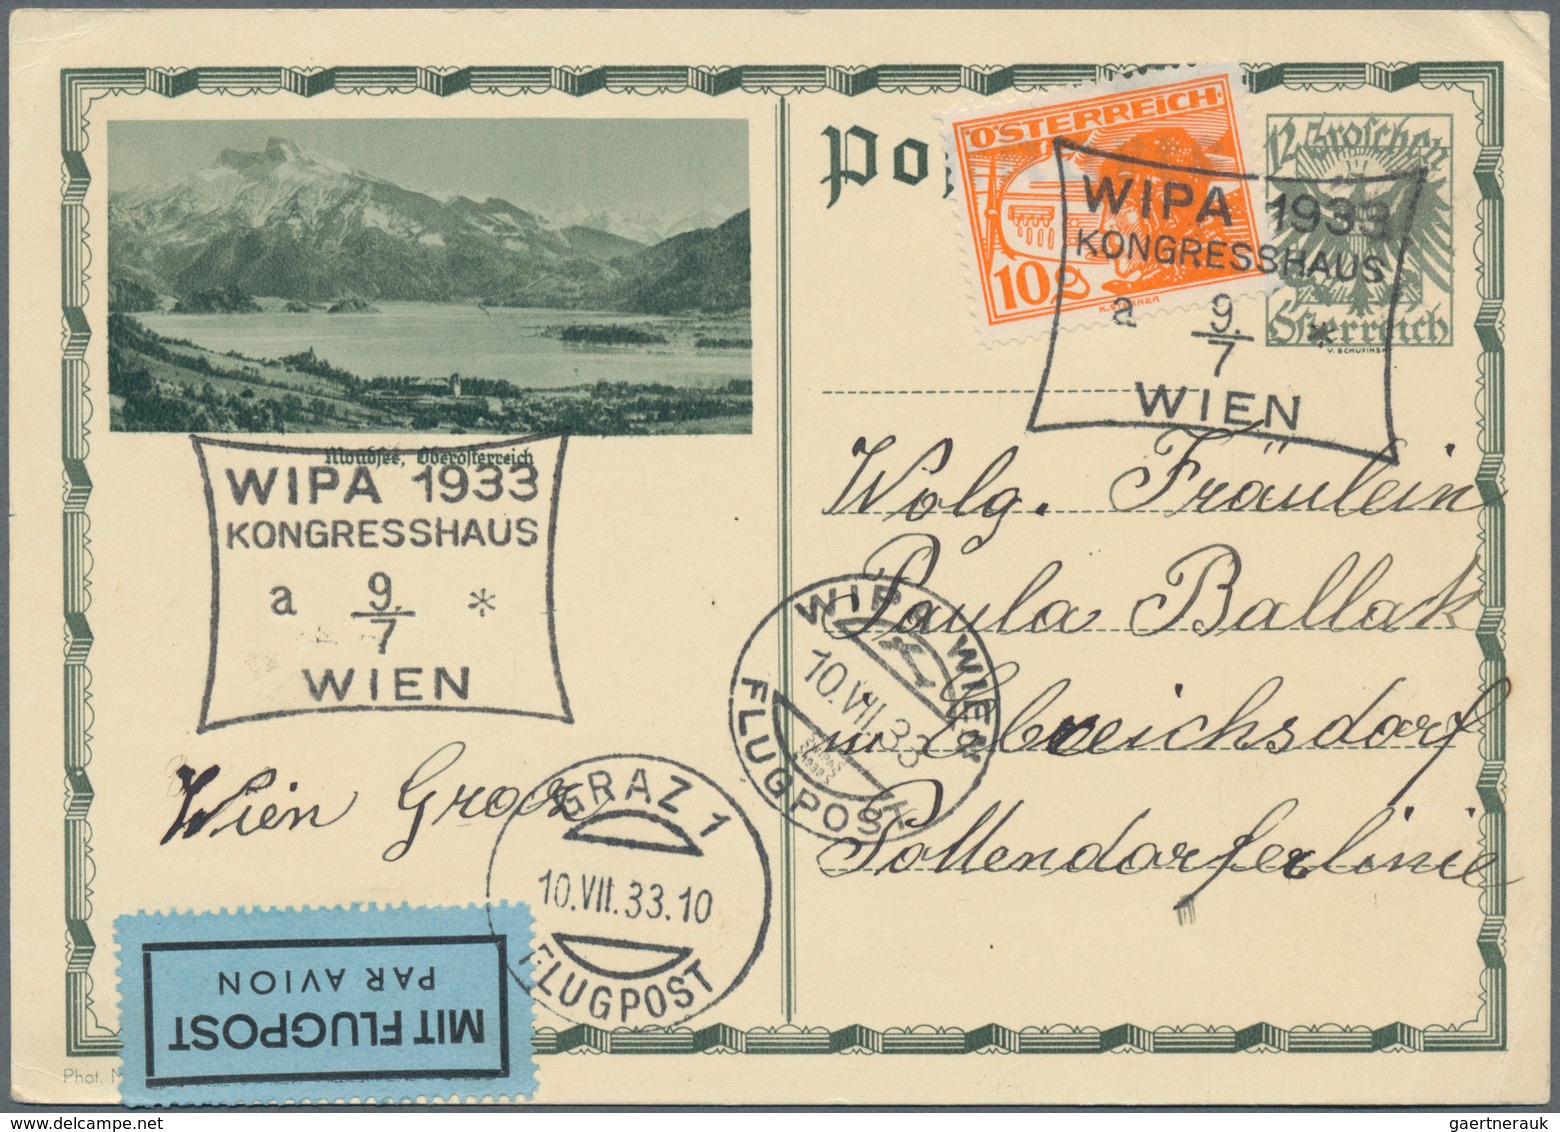 Österreich - Ganzsachen: 1928/1933, fünf verschied. Postkarten (dabei vier Bild-Pk.) alle mit Zusatz